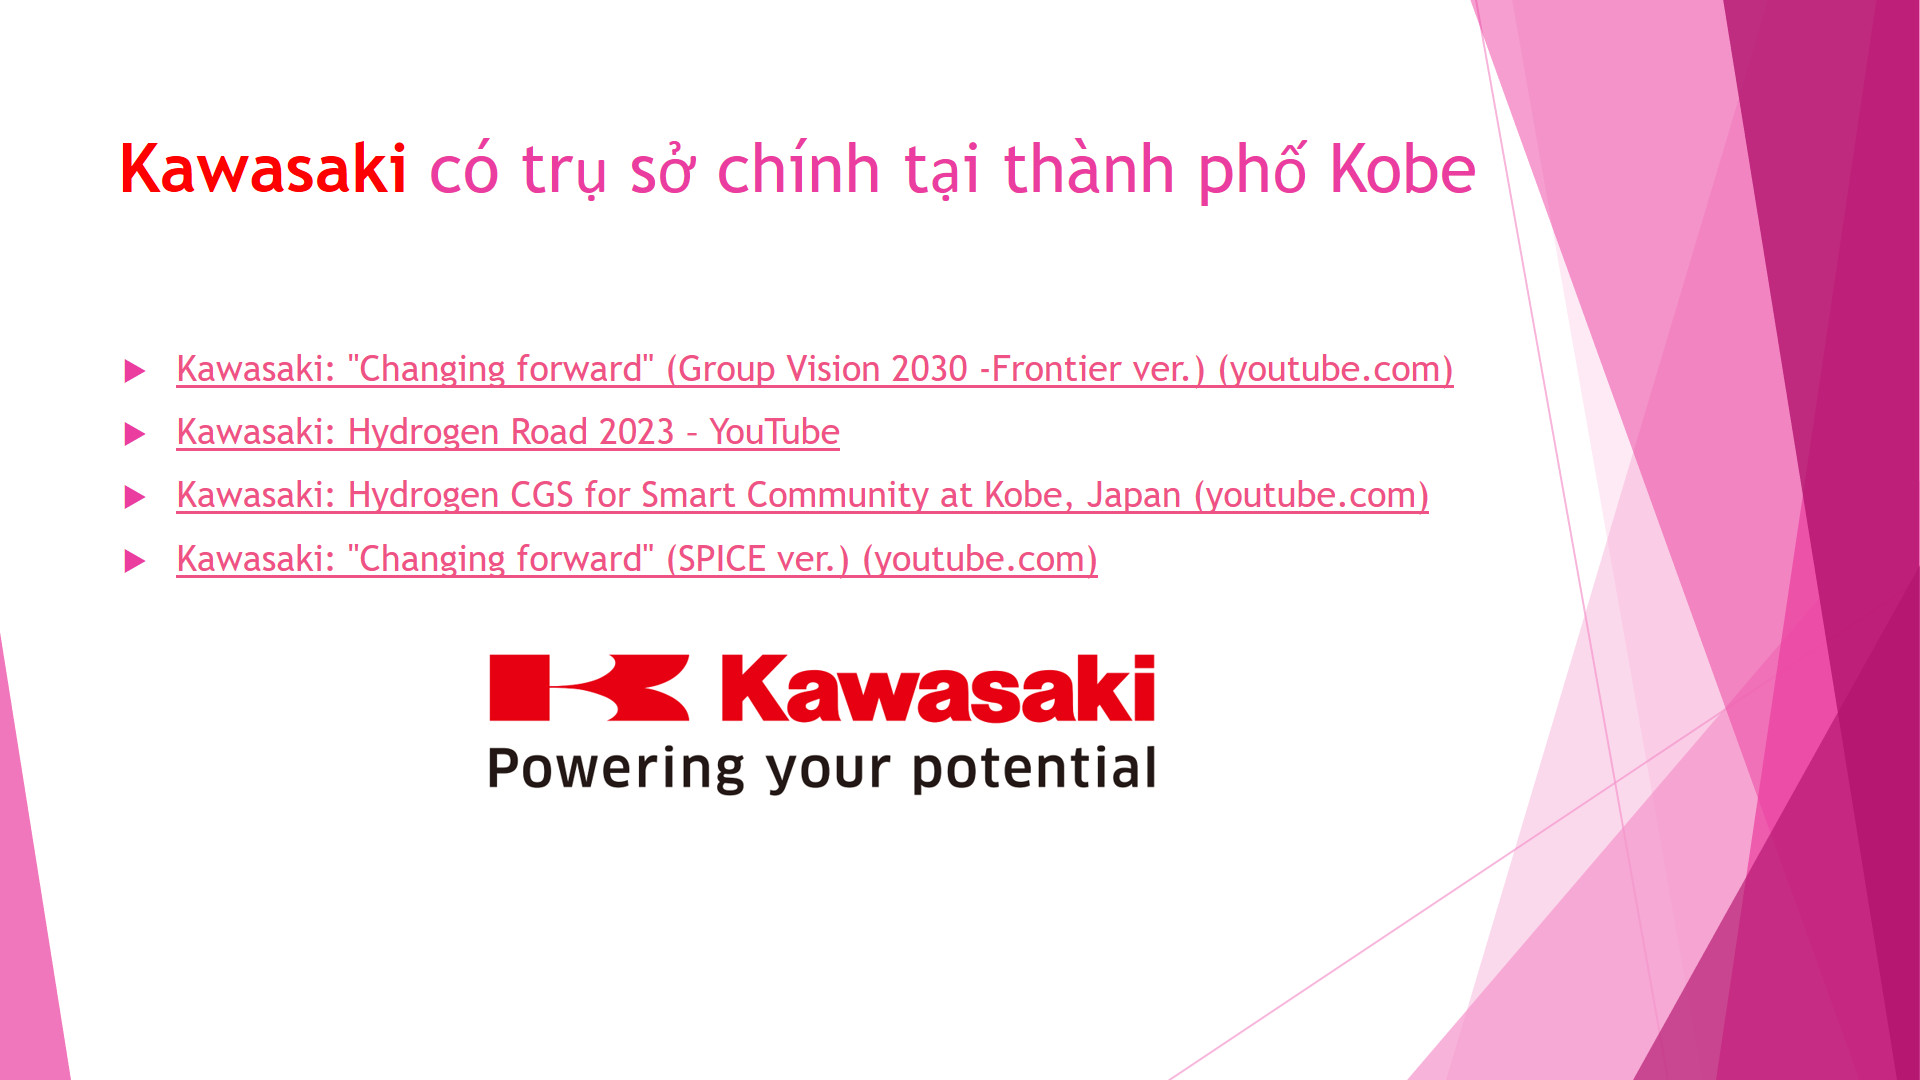 May be an image of text that says 'Kawasaki có trụ sở SỞ chinh tại thành phố Kobe Kawasaki: 